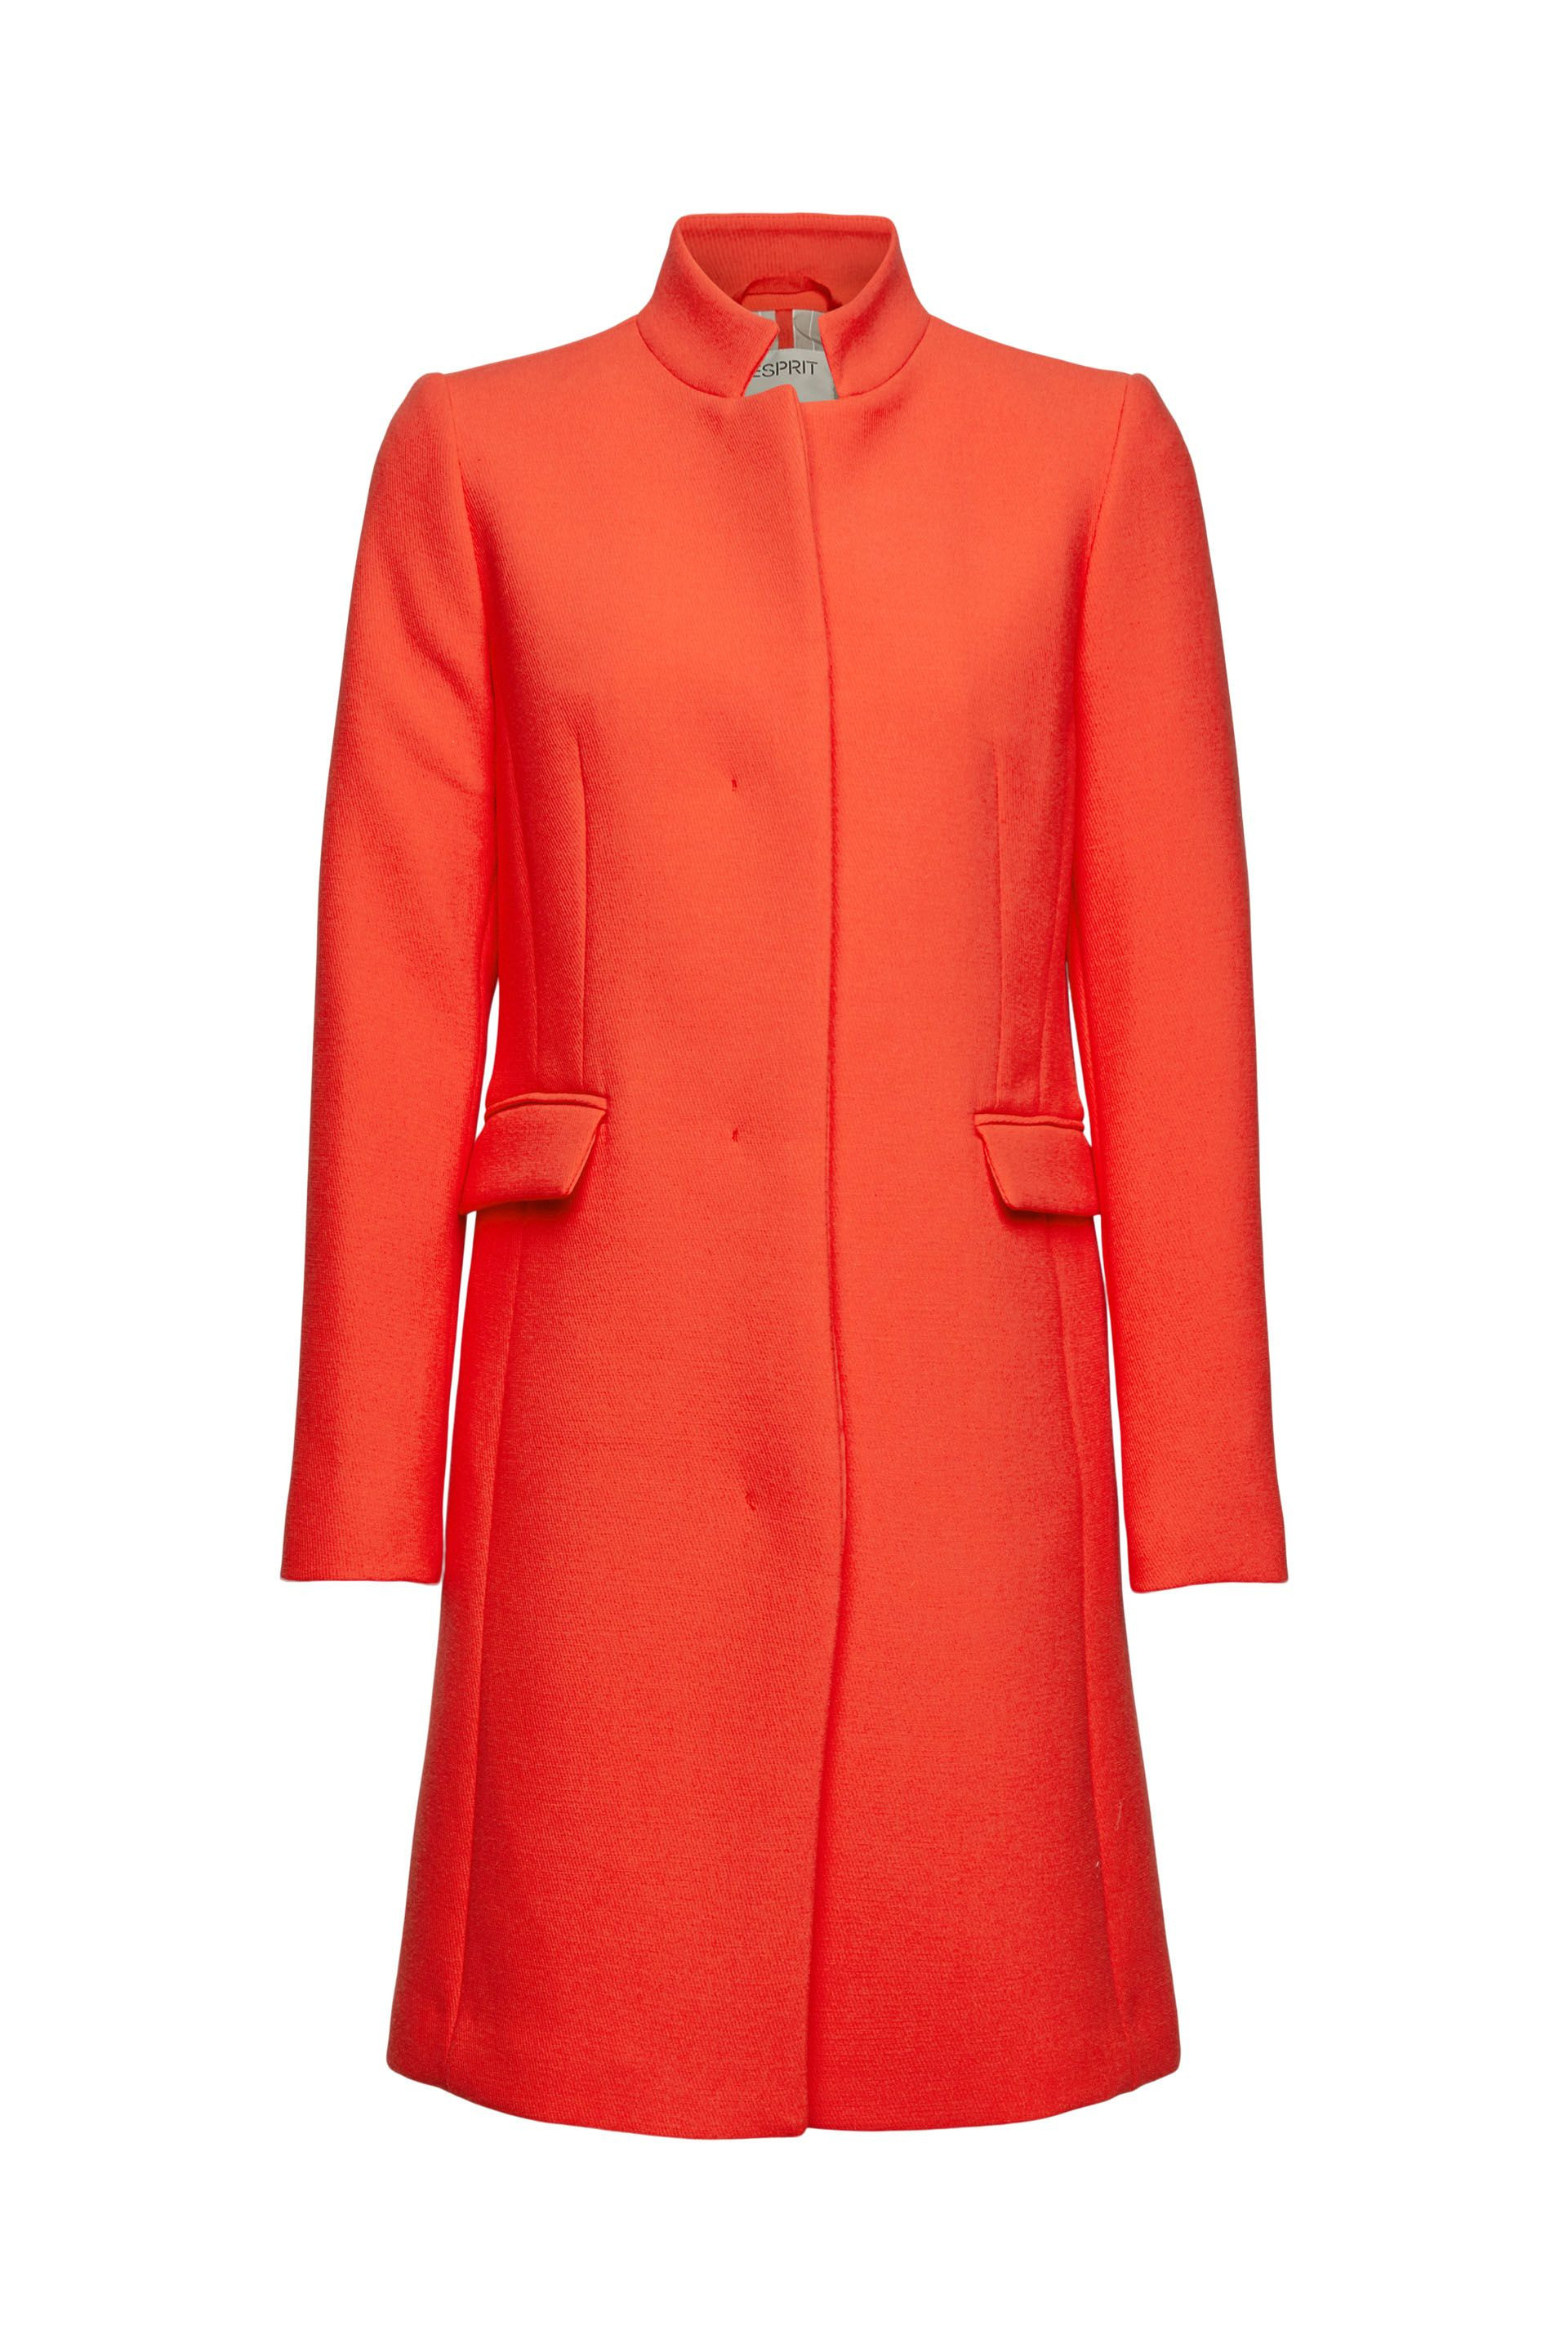 Cappotto sciancrato, Arancione, large image number 0